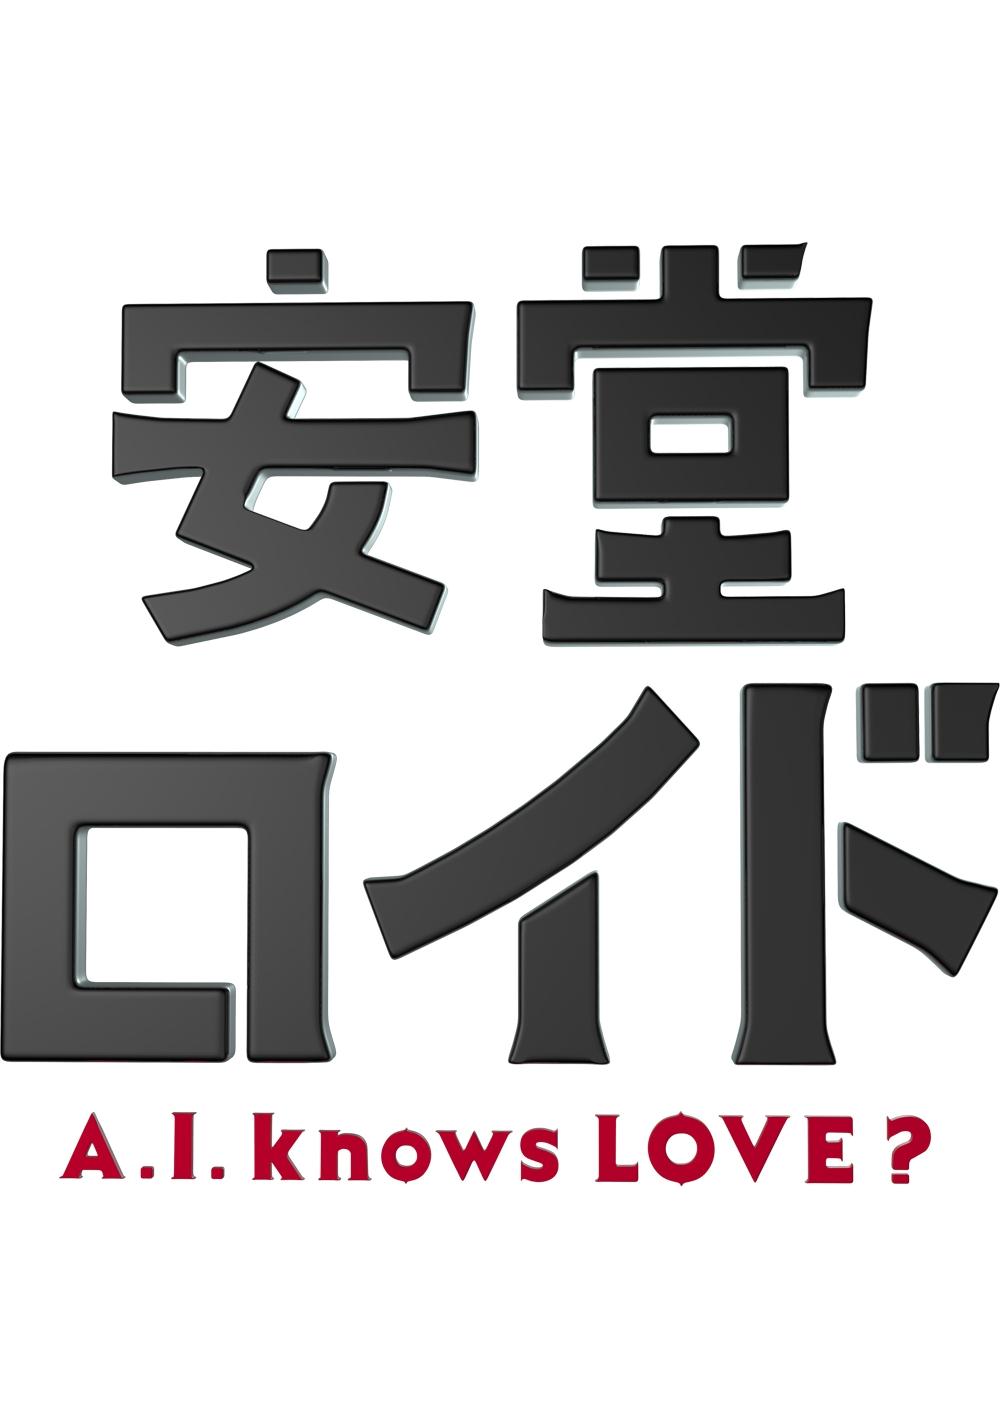 安堂ロイド〜A.I. knows LOVE?〜